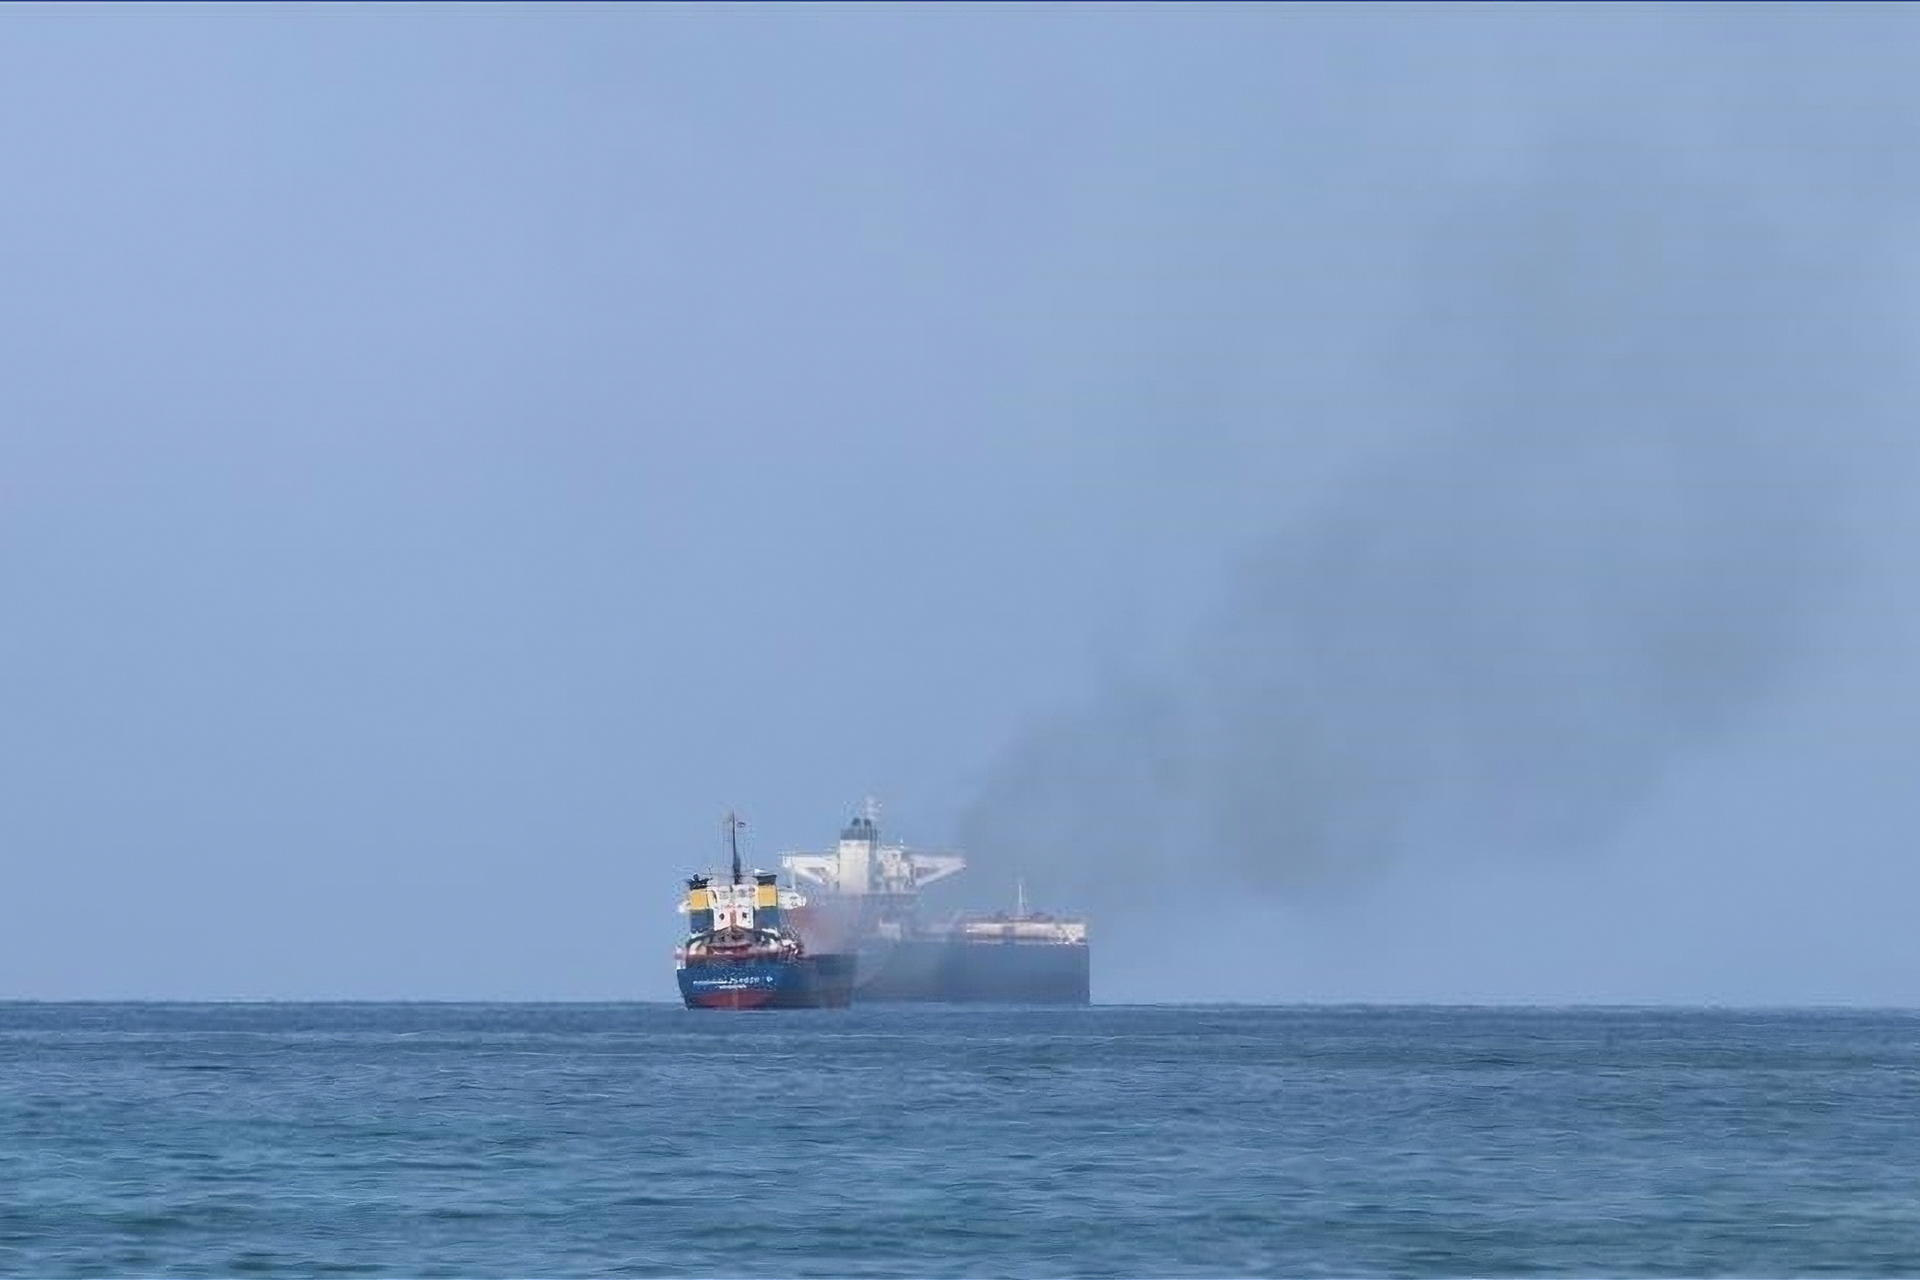 Tanker endommagé par missile près des côtes du Yémen